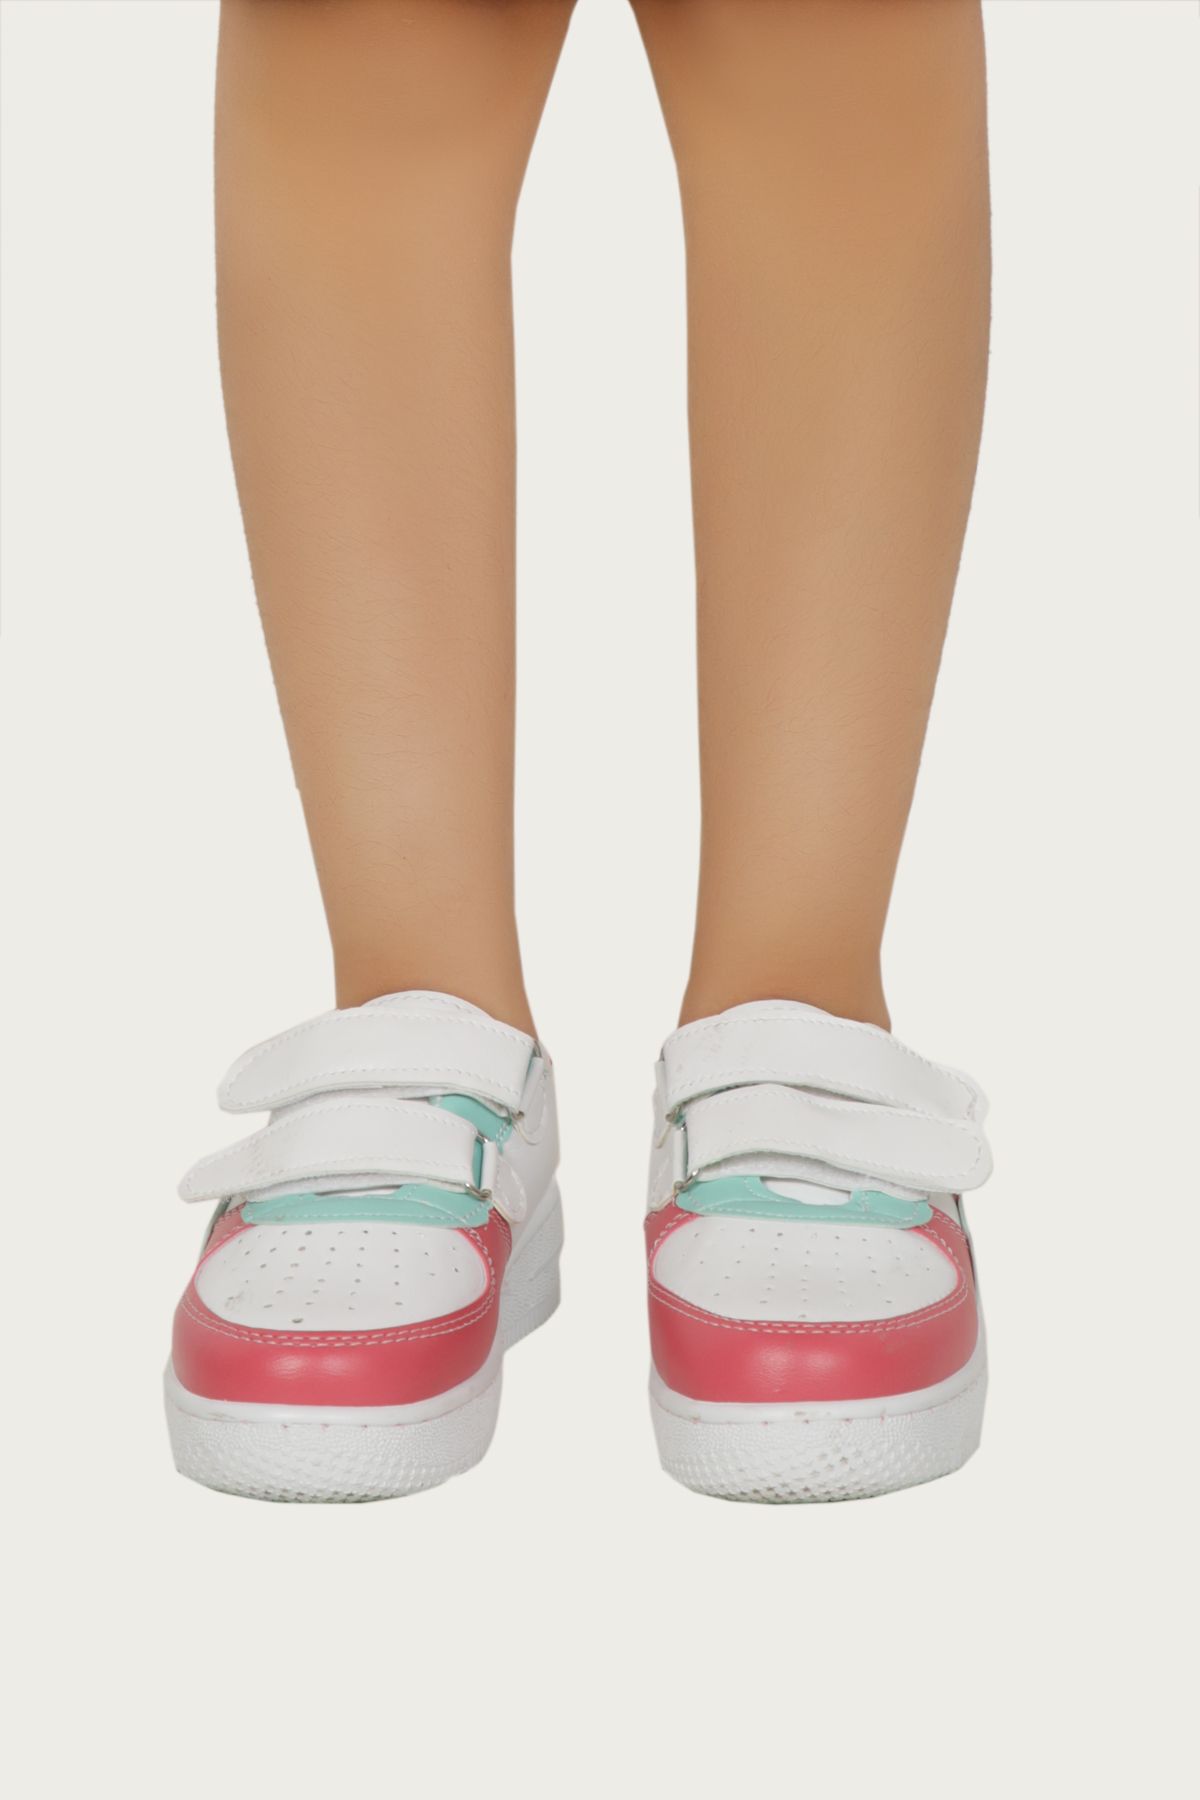 kabkabi Kız Çocuk Turkuaz Şeritli Cırt Cırtlı Outdoor Spor Ayakkabı Sneaker